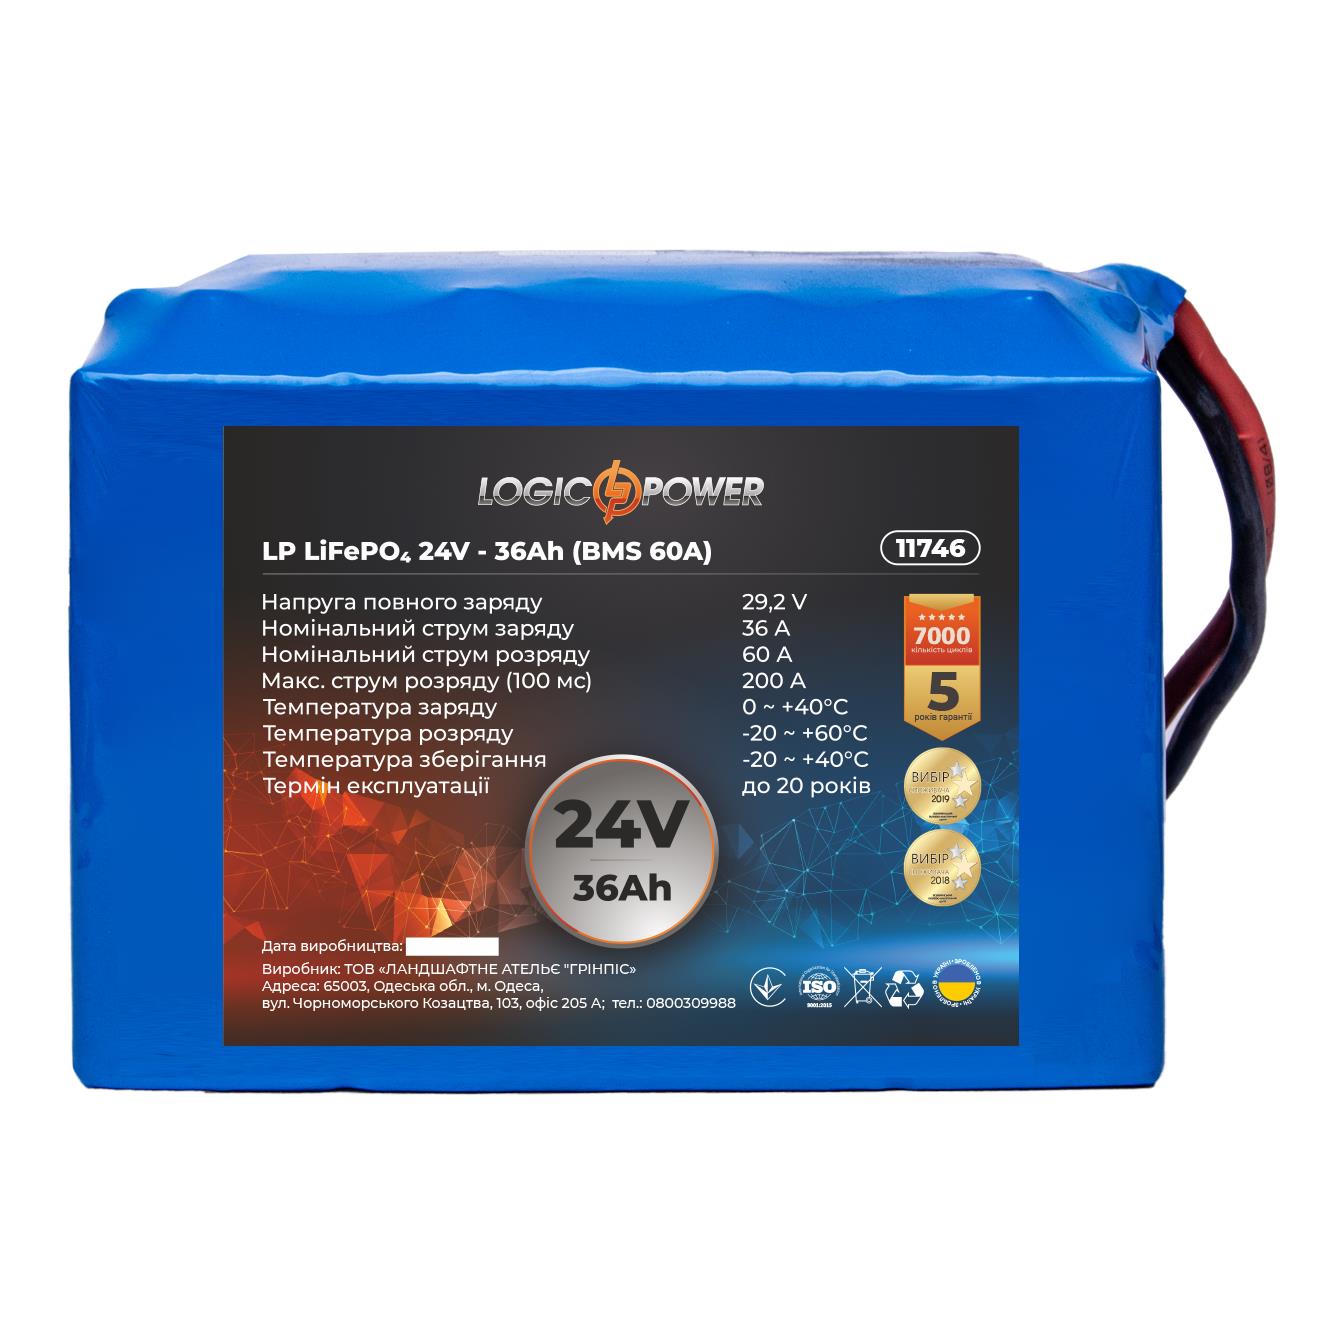 Відгуки акумулятор літій-залізо-фосфатний LogicPower LP LiFePO4 24V - 36 Ah (BMS 60A) (11746)